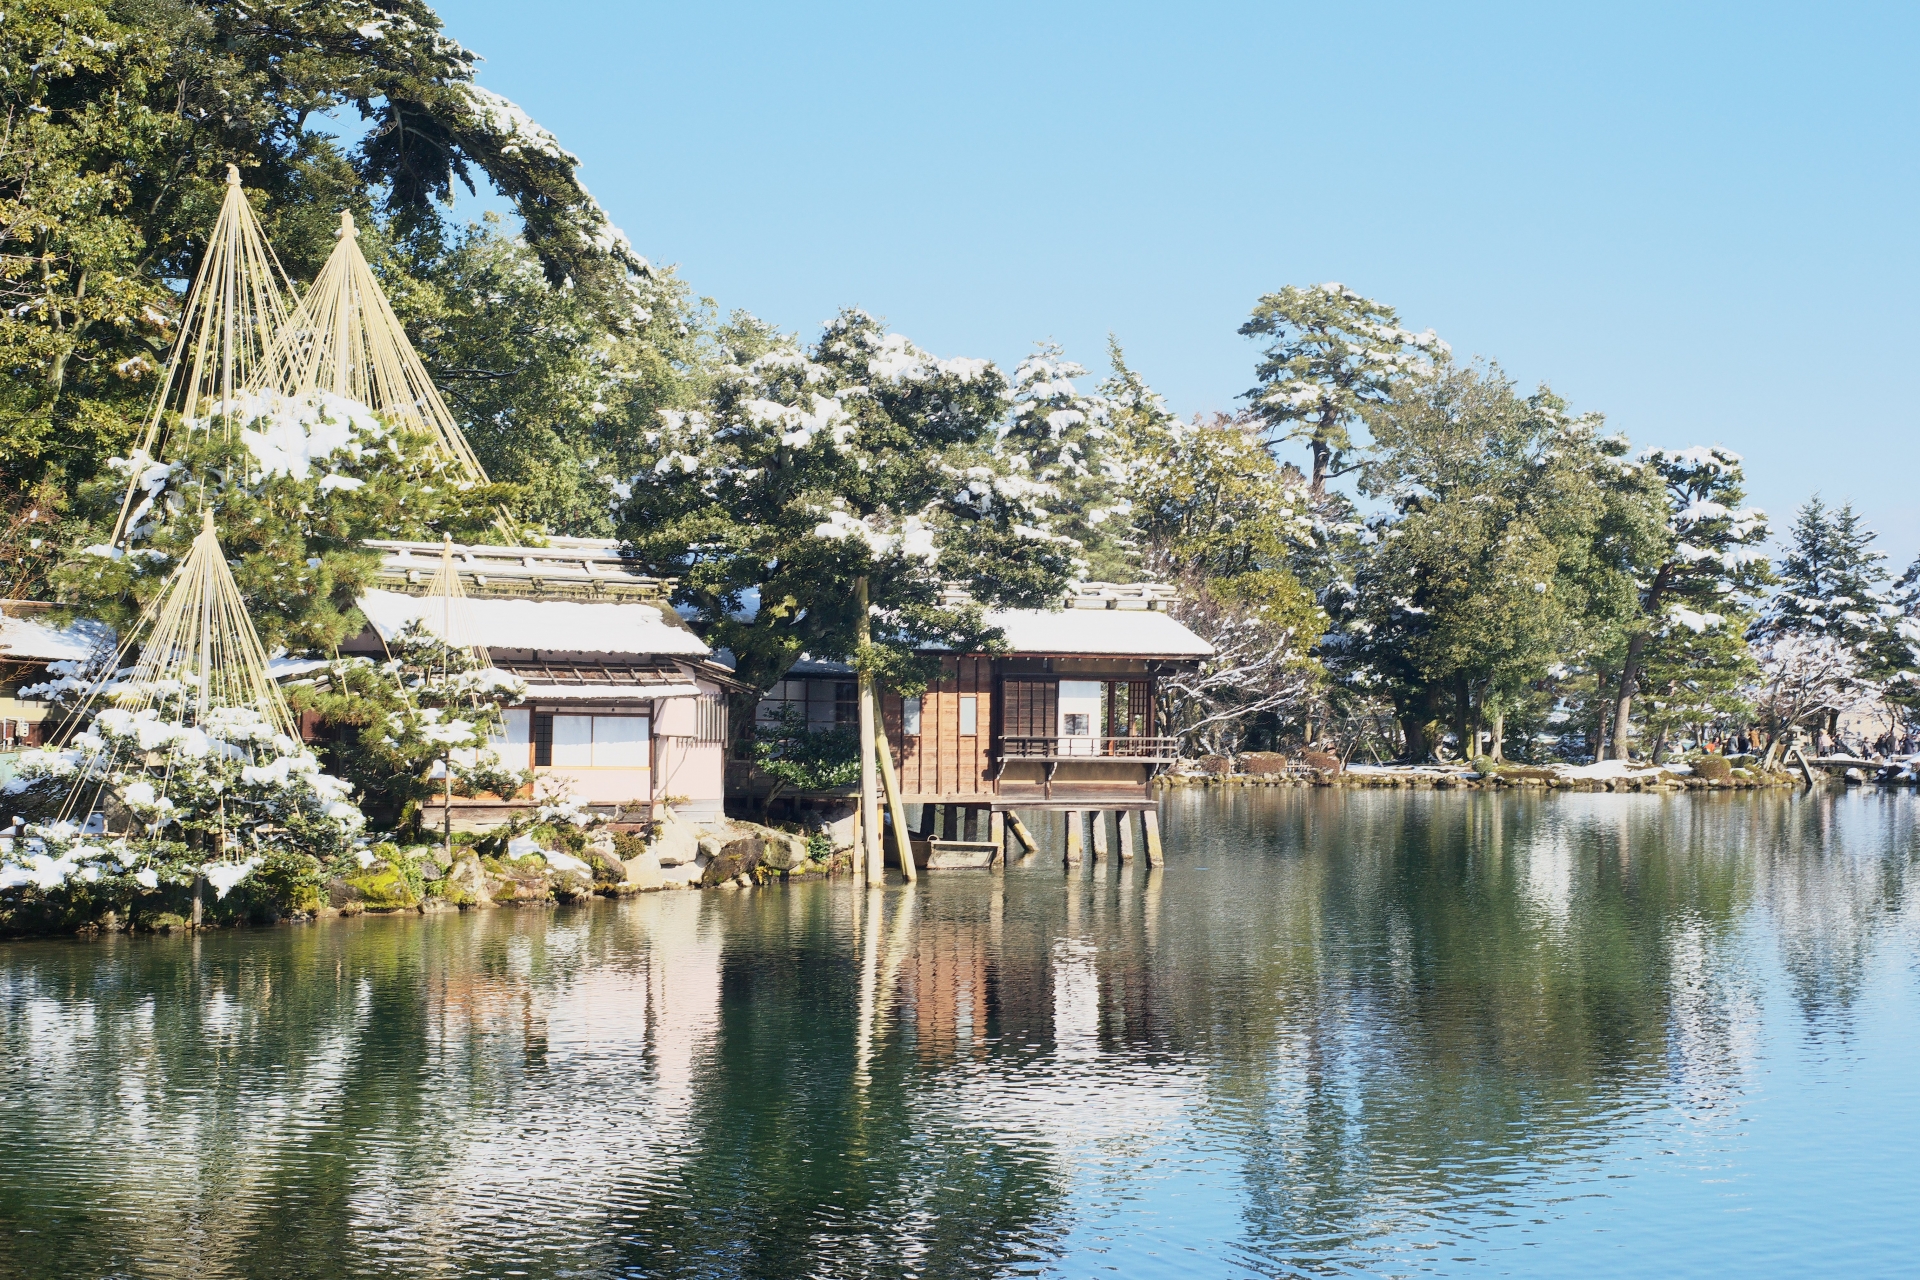 石川県金沢市の「兼六園」。日本三名園としてよく知られています